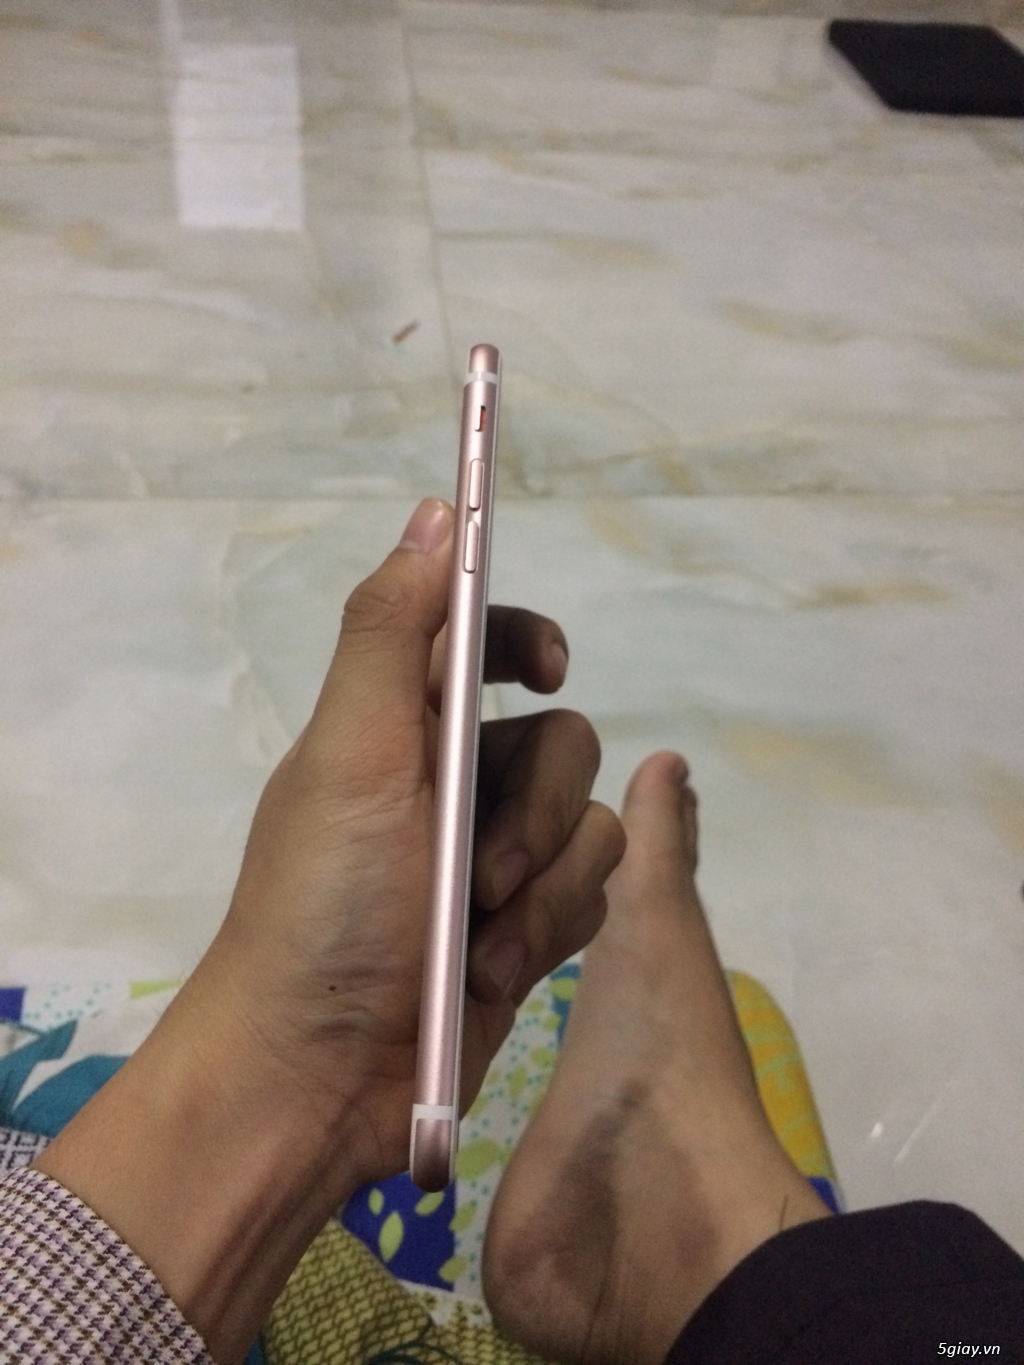 Bán Iphone 6s Plus Vàng Hồng 16GB Gò Vấp - 2